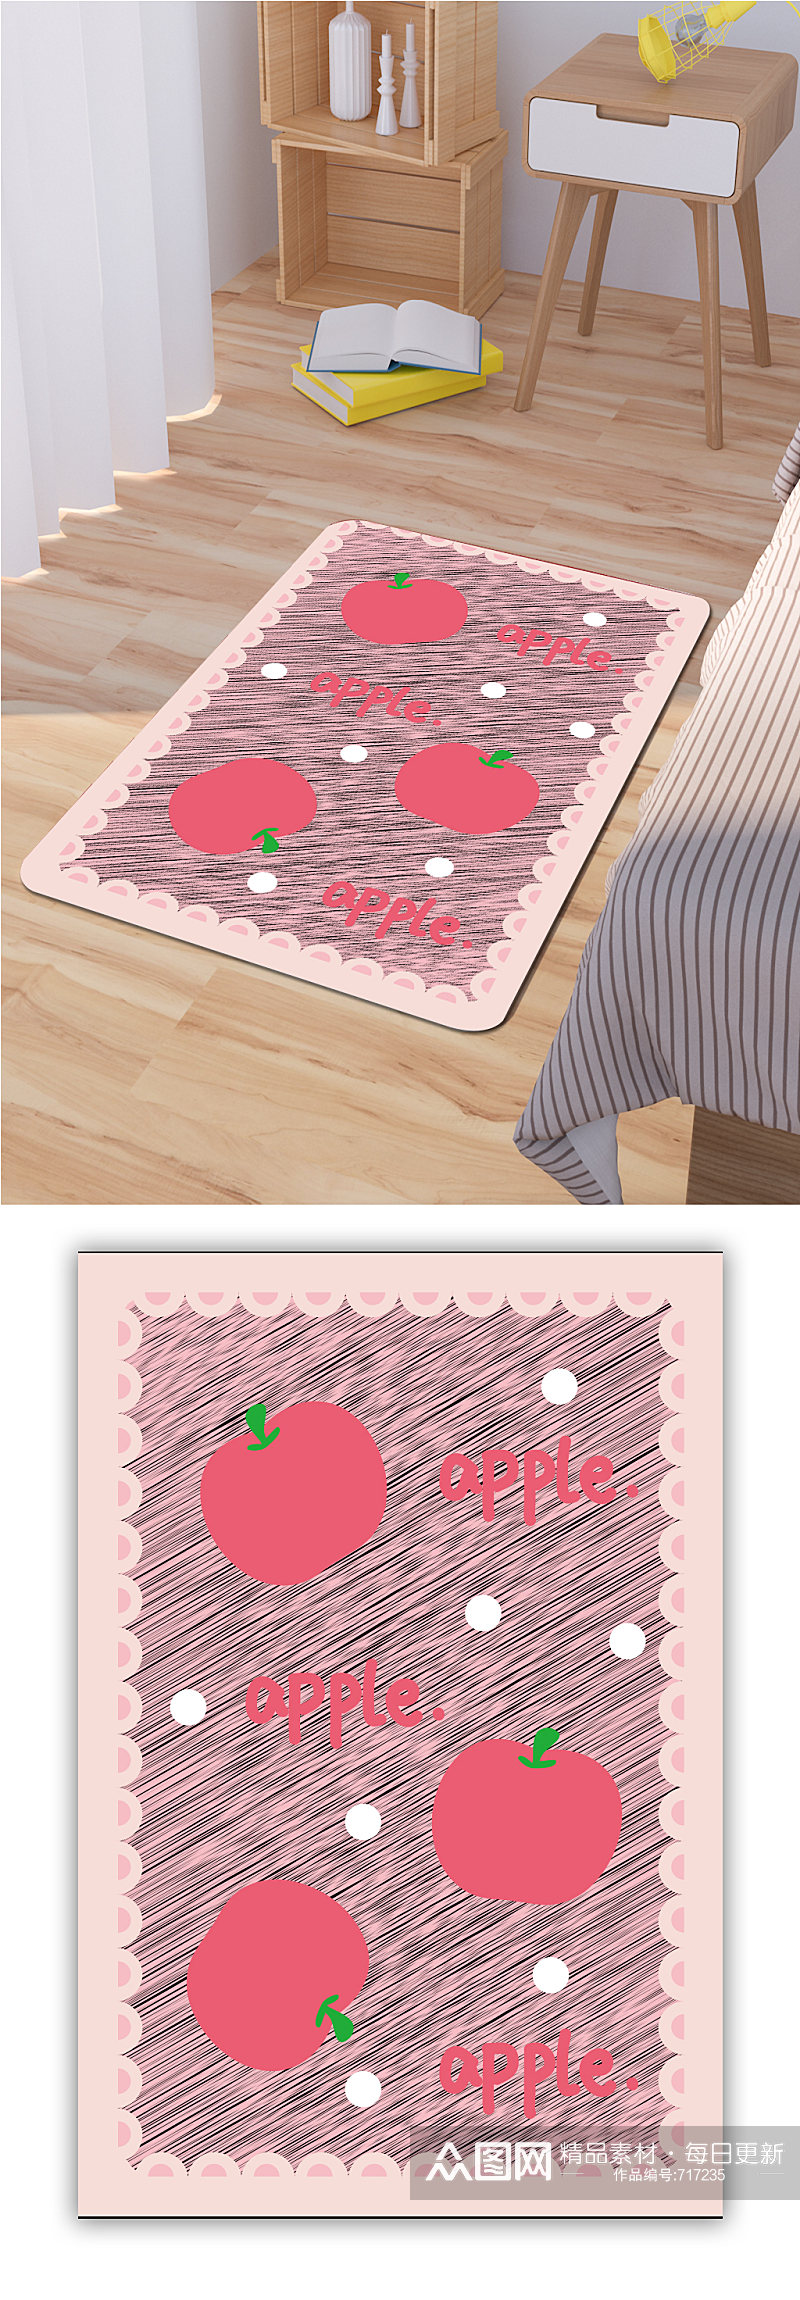 卡通水果图案地毯客厅地毯素材